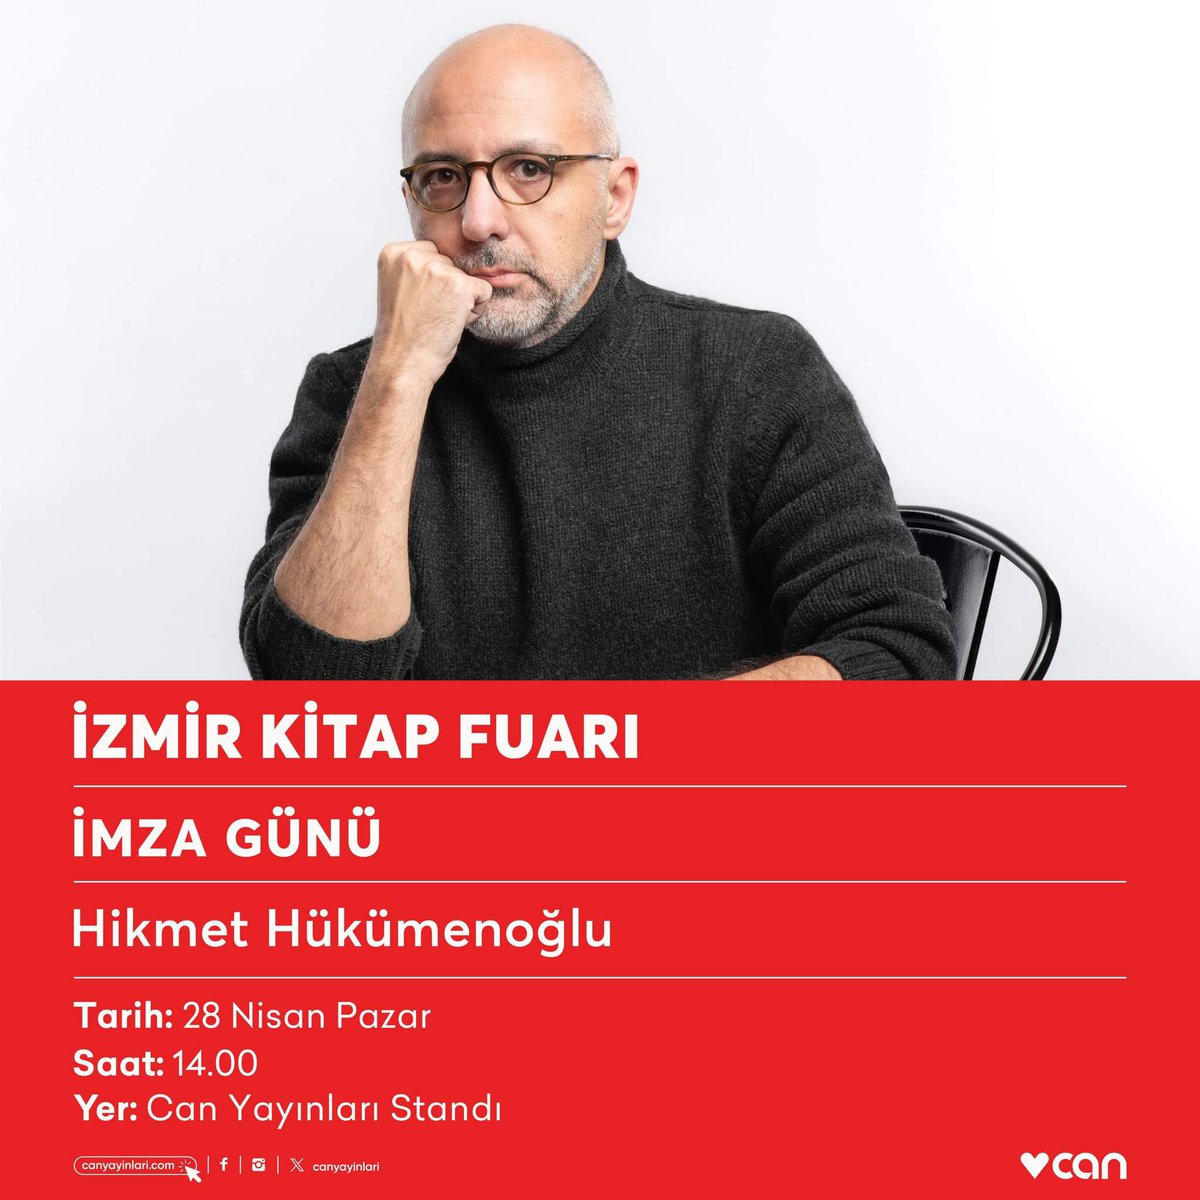 Hikmet Hükümenoğlu bugün saat 14.00’te #İzmirKitapFuarı Can Yayınları standında okurlarıyla buluşacak.